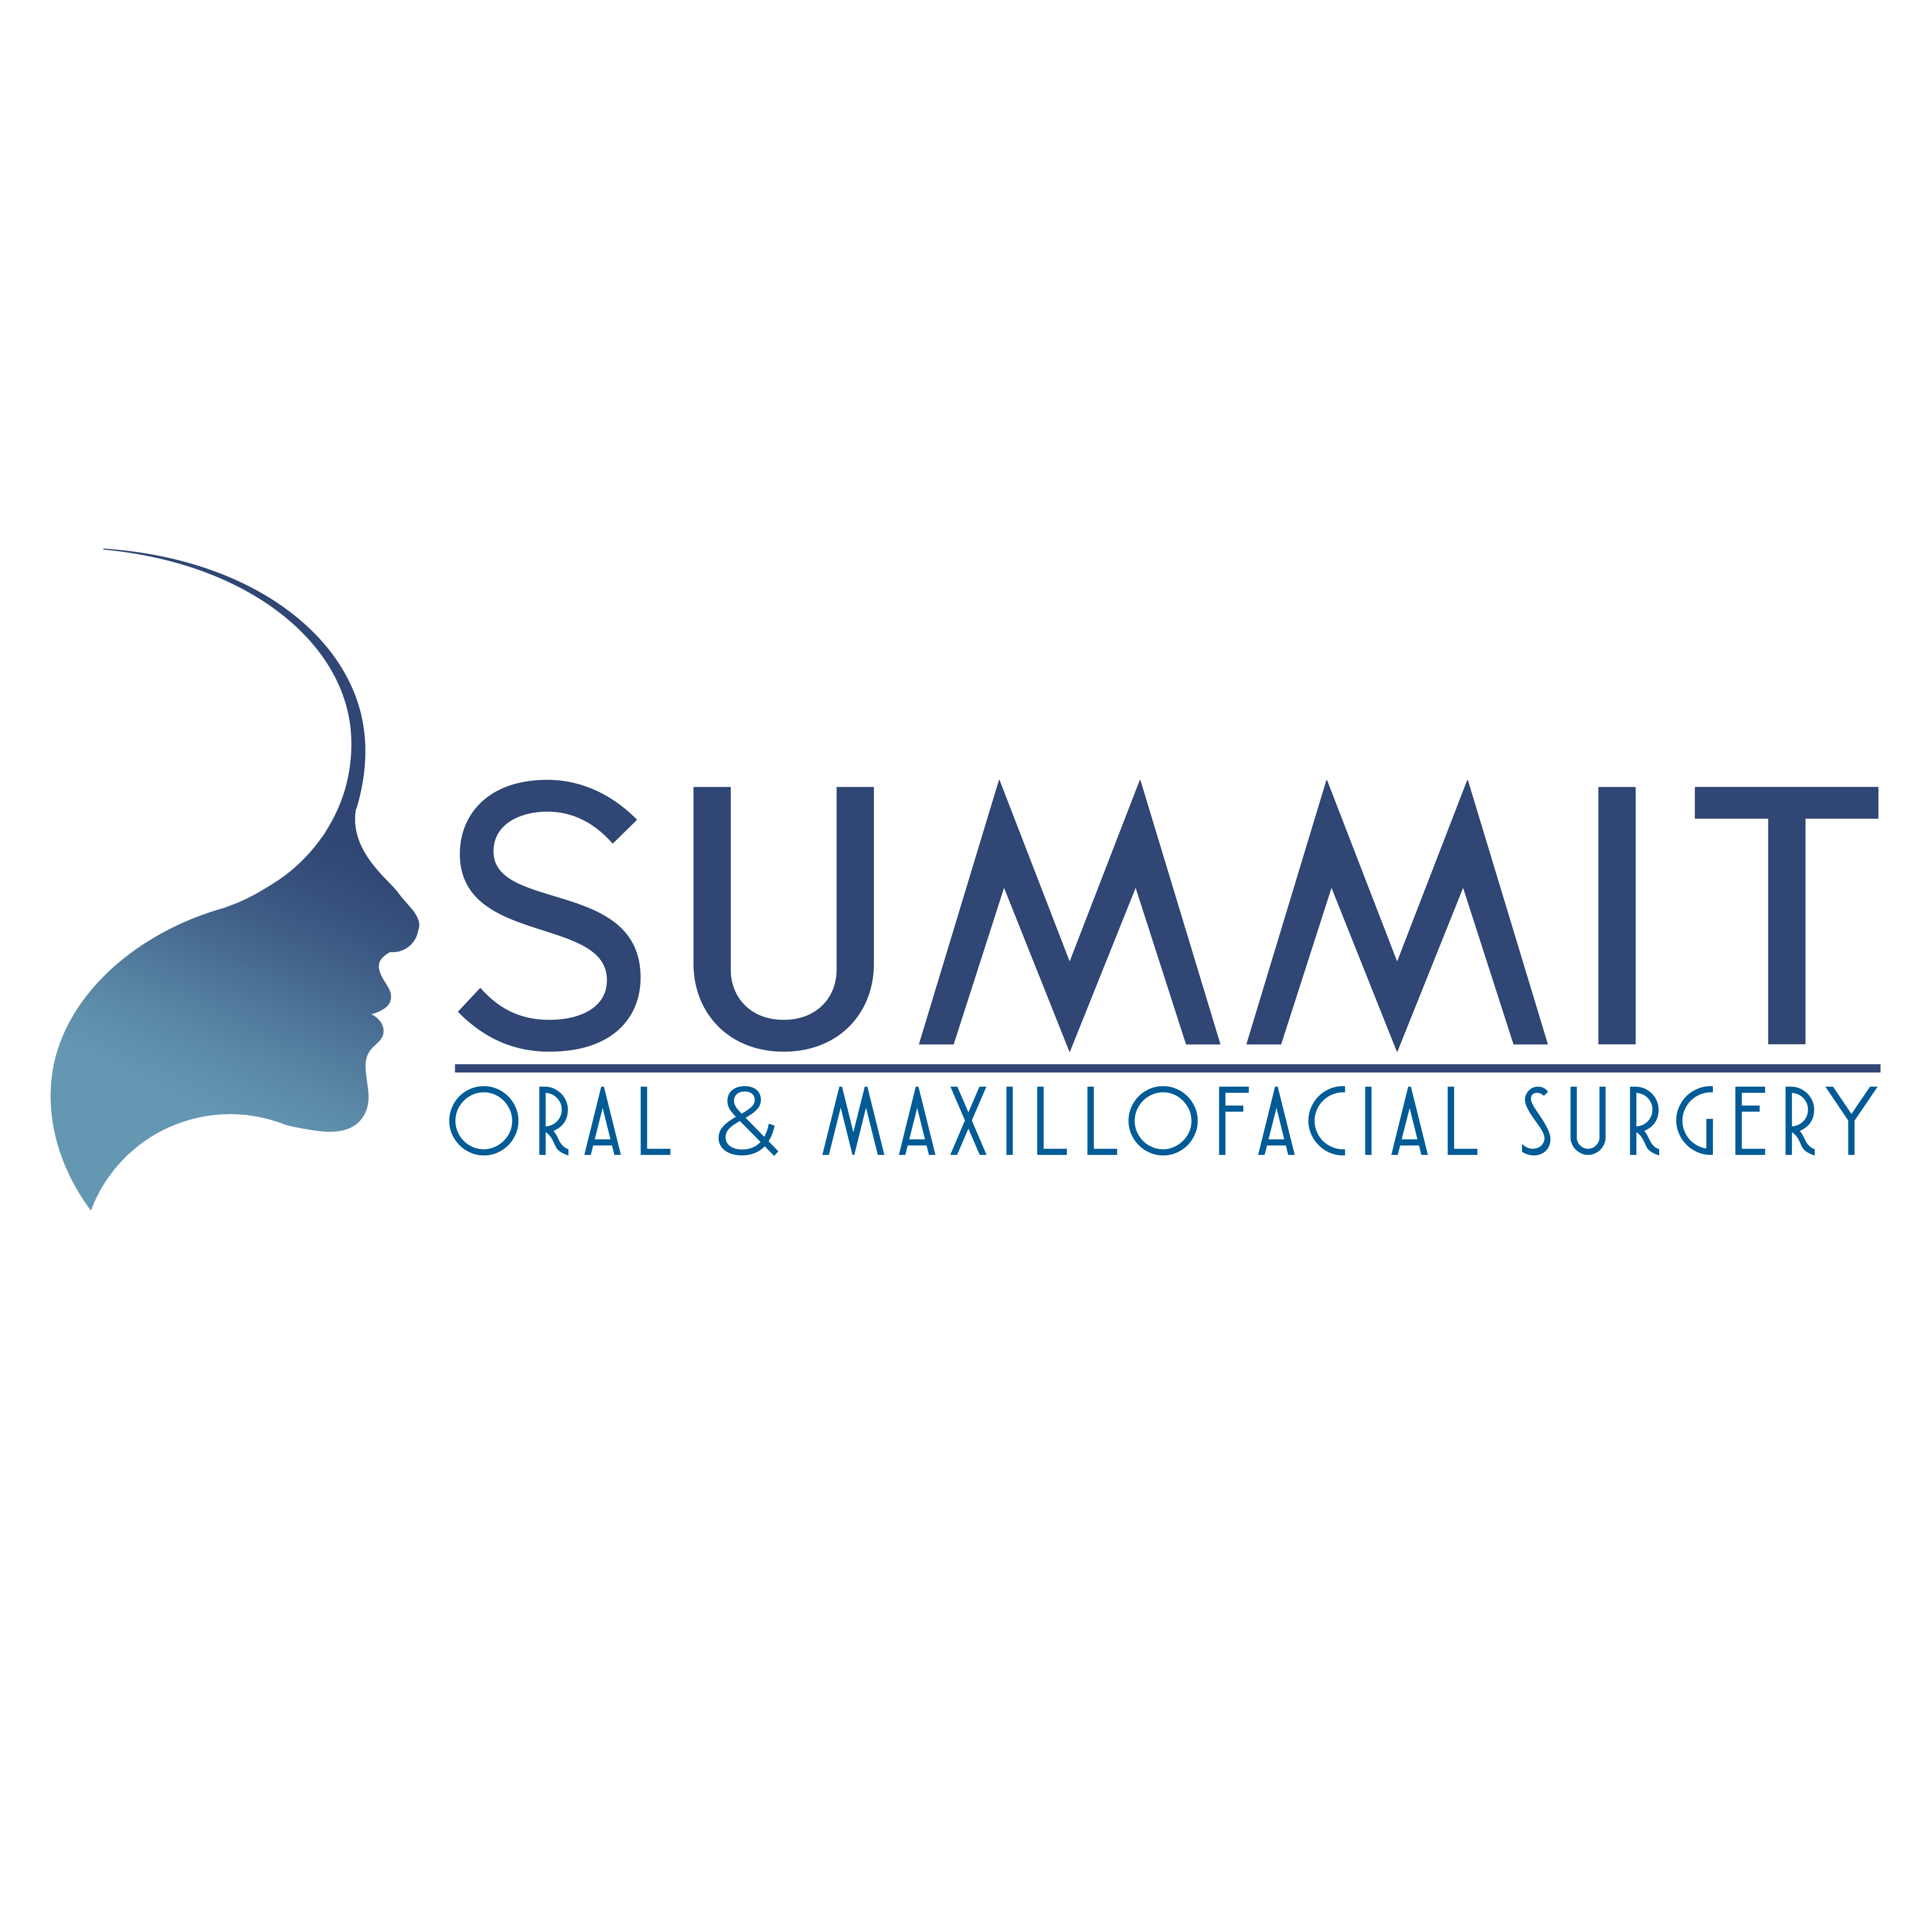 Summit Oral & Maxillofacial Surgery - Macomb, MI 48044 - (586)286-1600 | ShowMeLocal.com